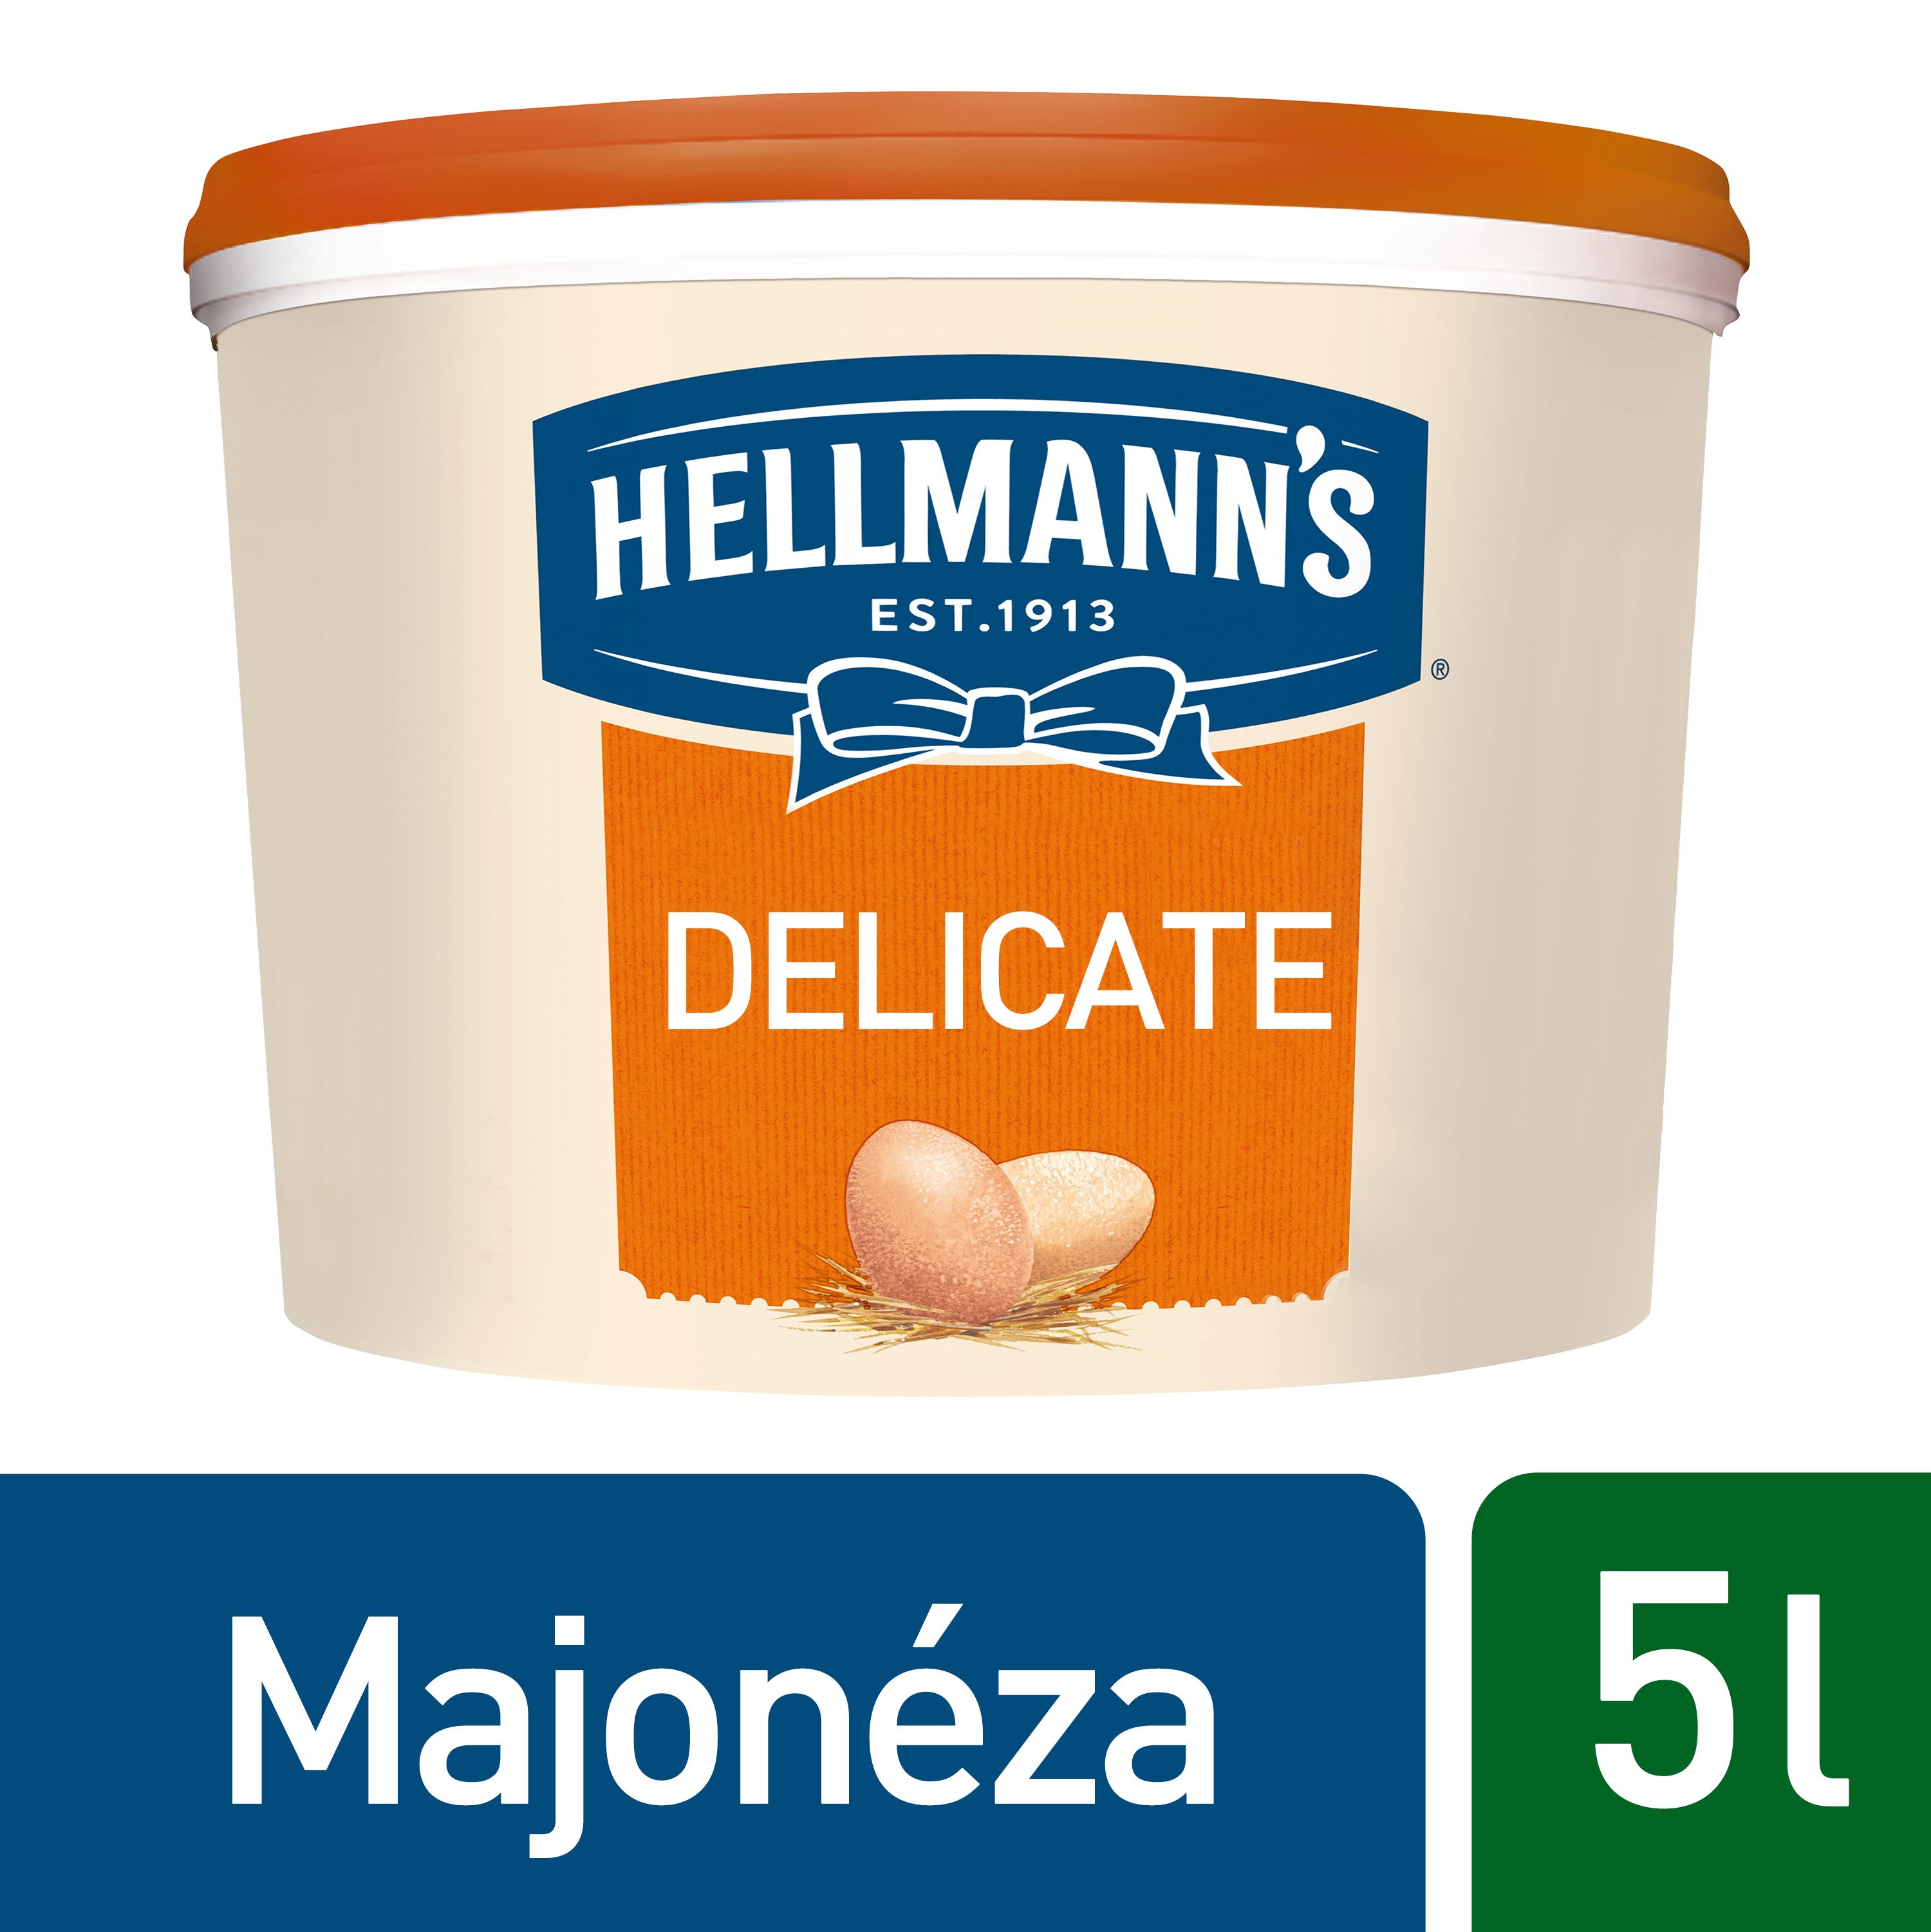 Hellmann's Delicate majonéza 5 l - 